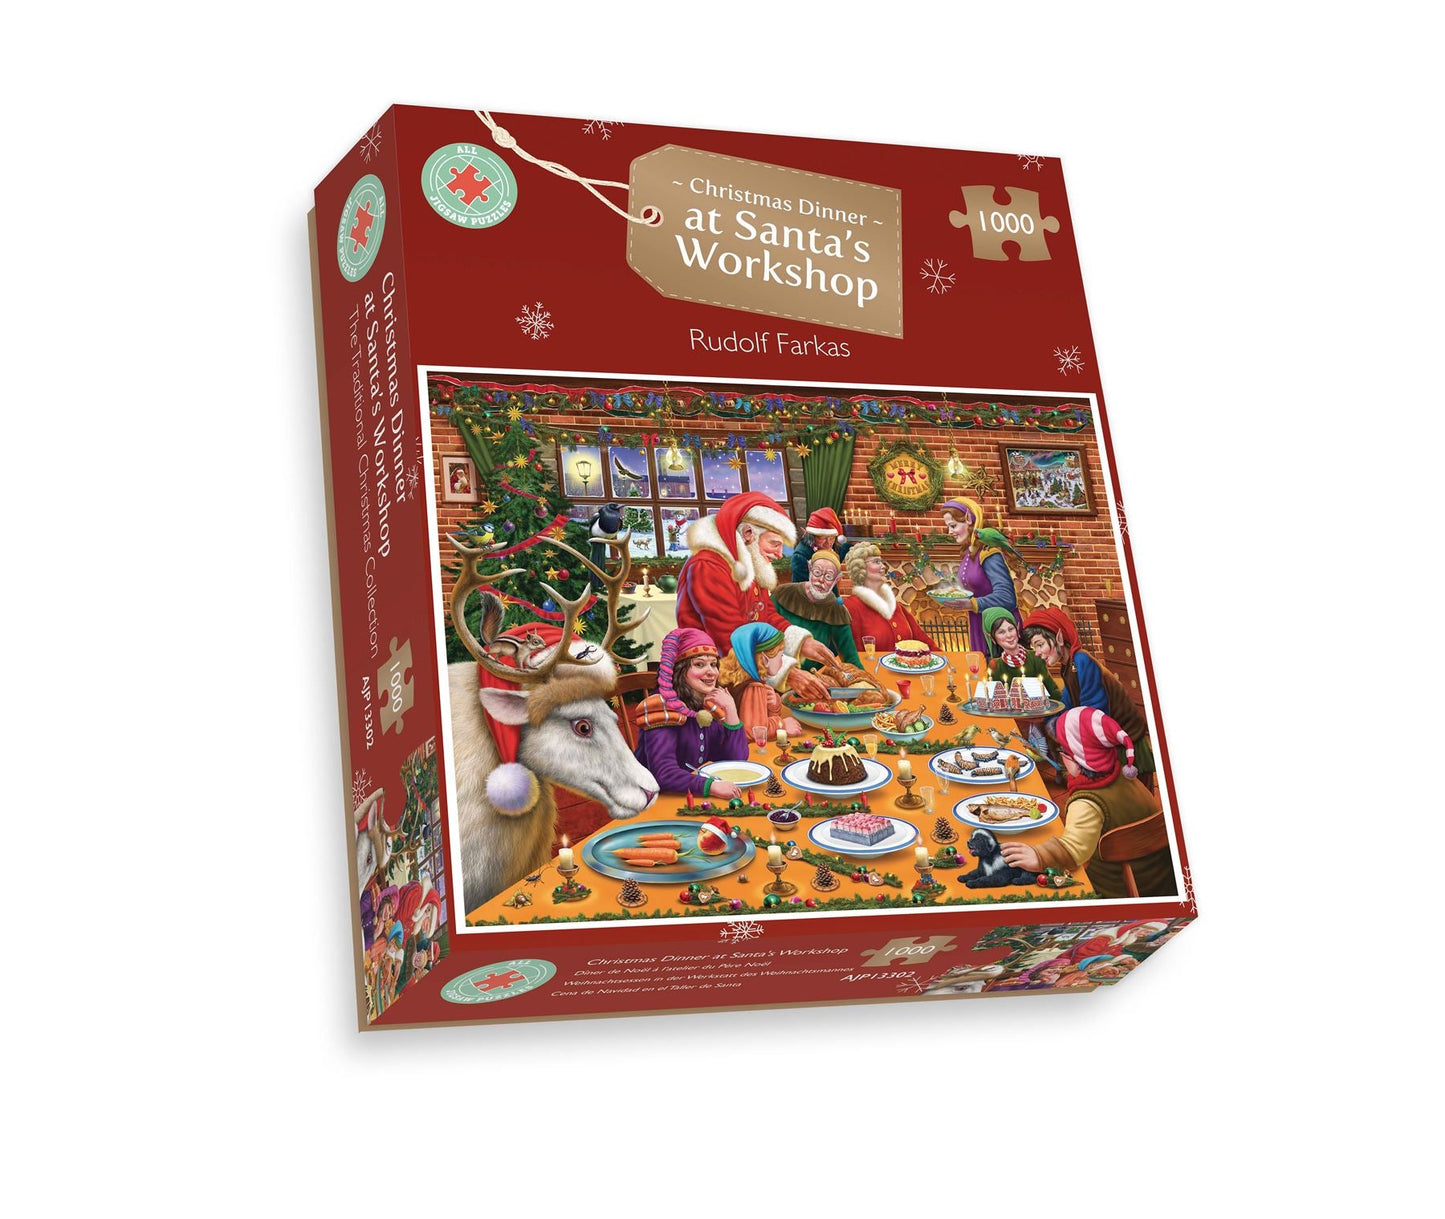 Santa's Christmas List - Jigsaw Puzzle by Rudolf Farkas – All Jigsaw Puzzles  US